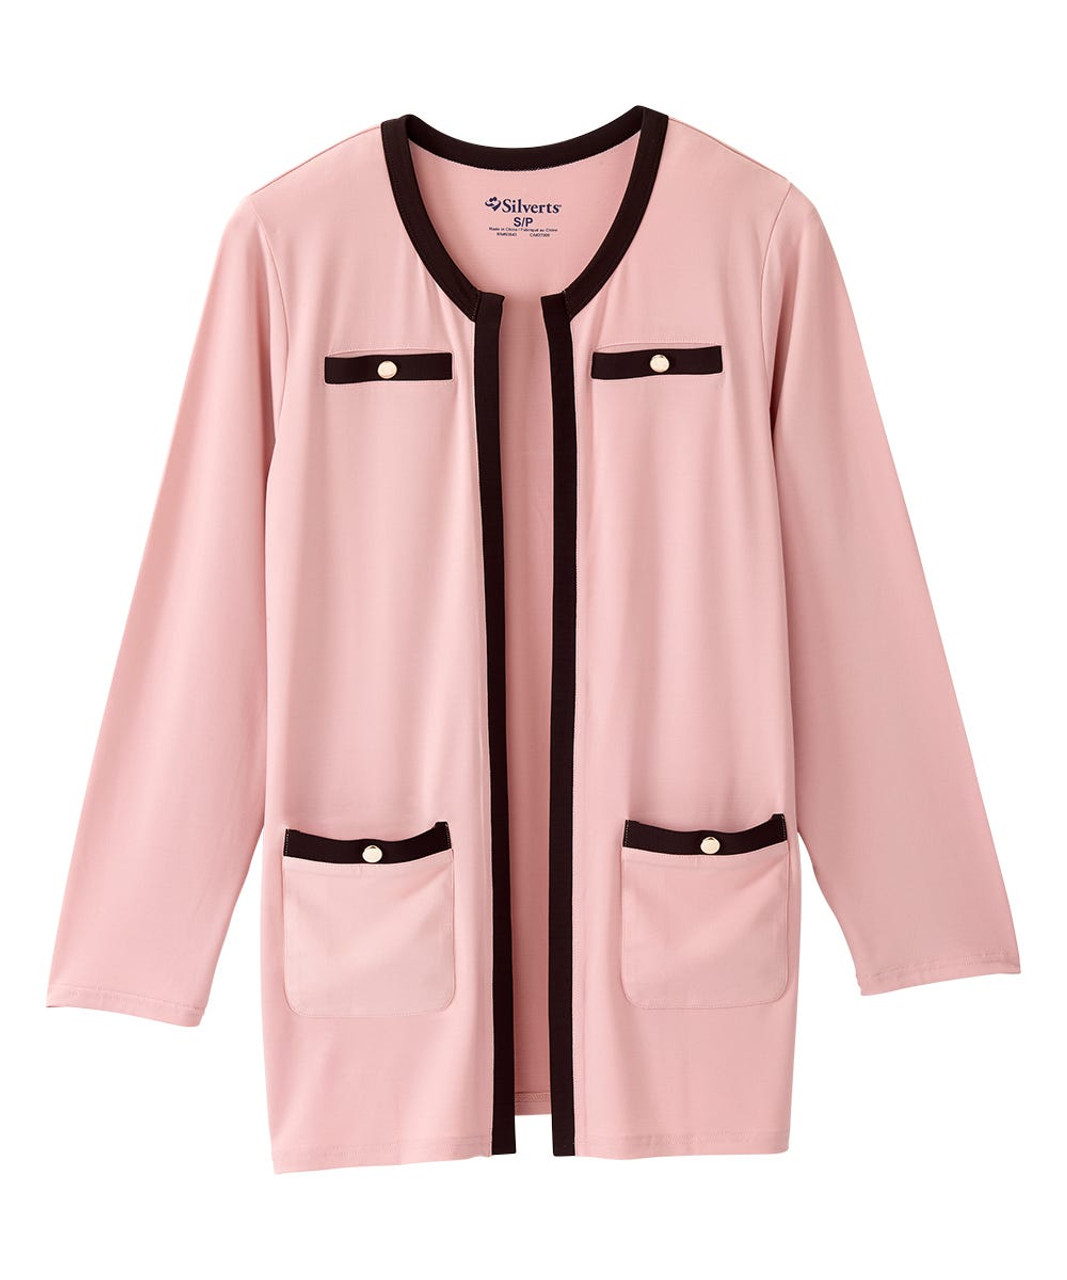 Silverts SV157 Senior Women's Long Sleeve Knit Blazer Dusty Pink/Black Contrast, Size=2XL, SV157-SV2029-2XL